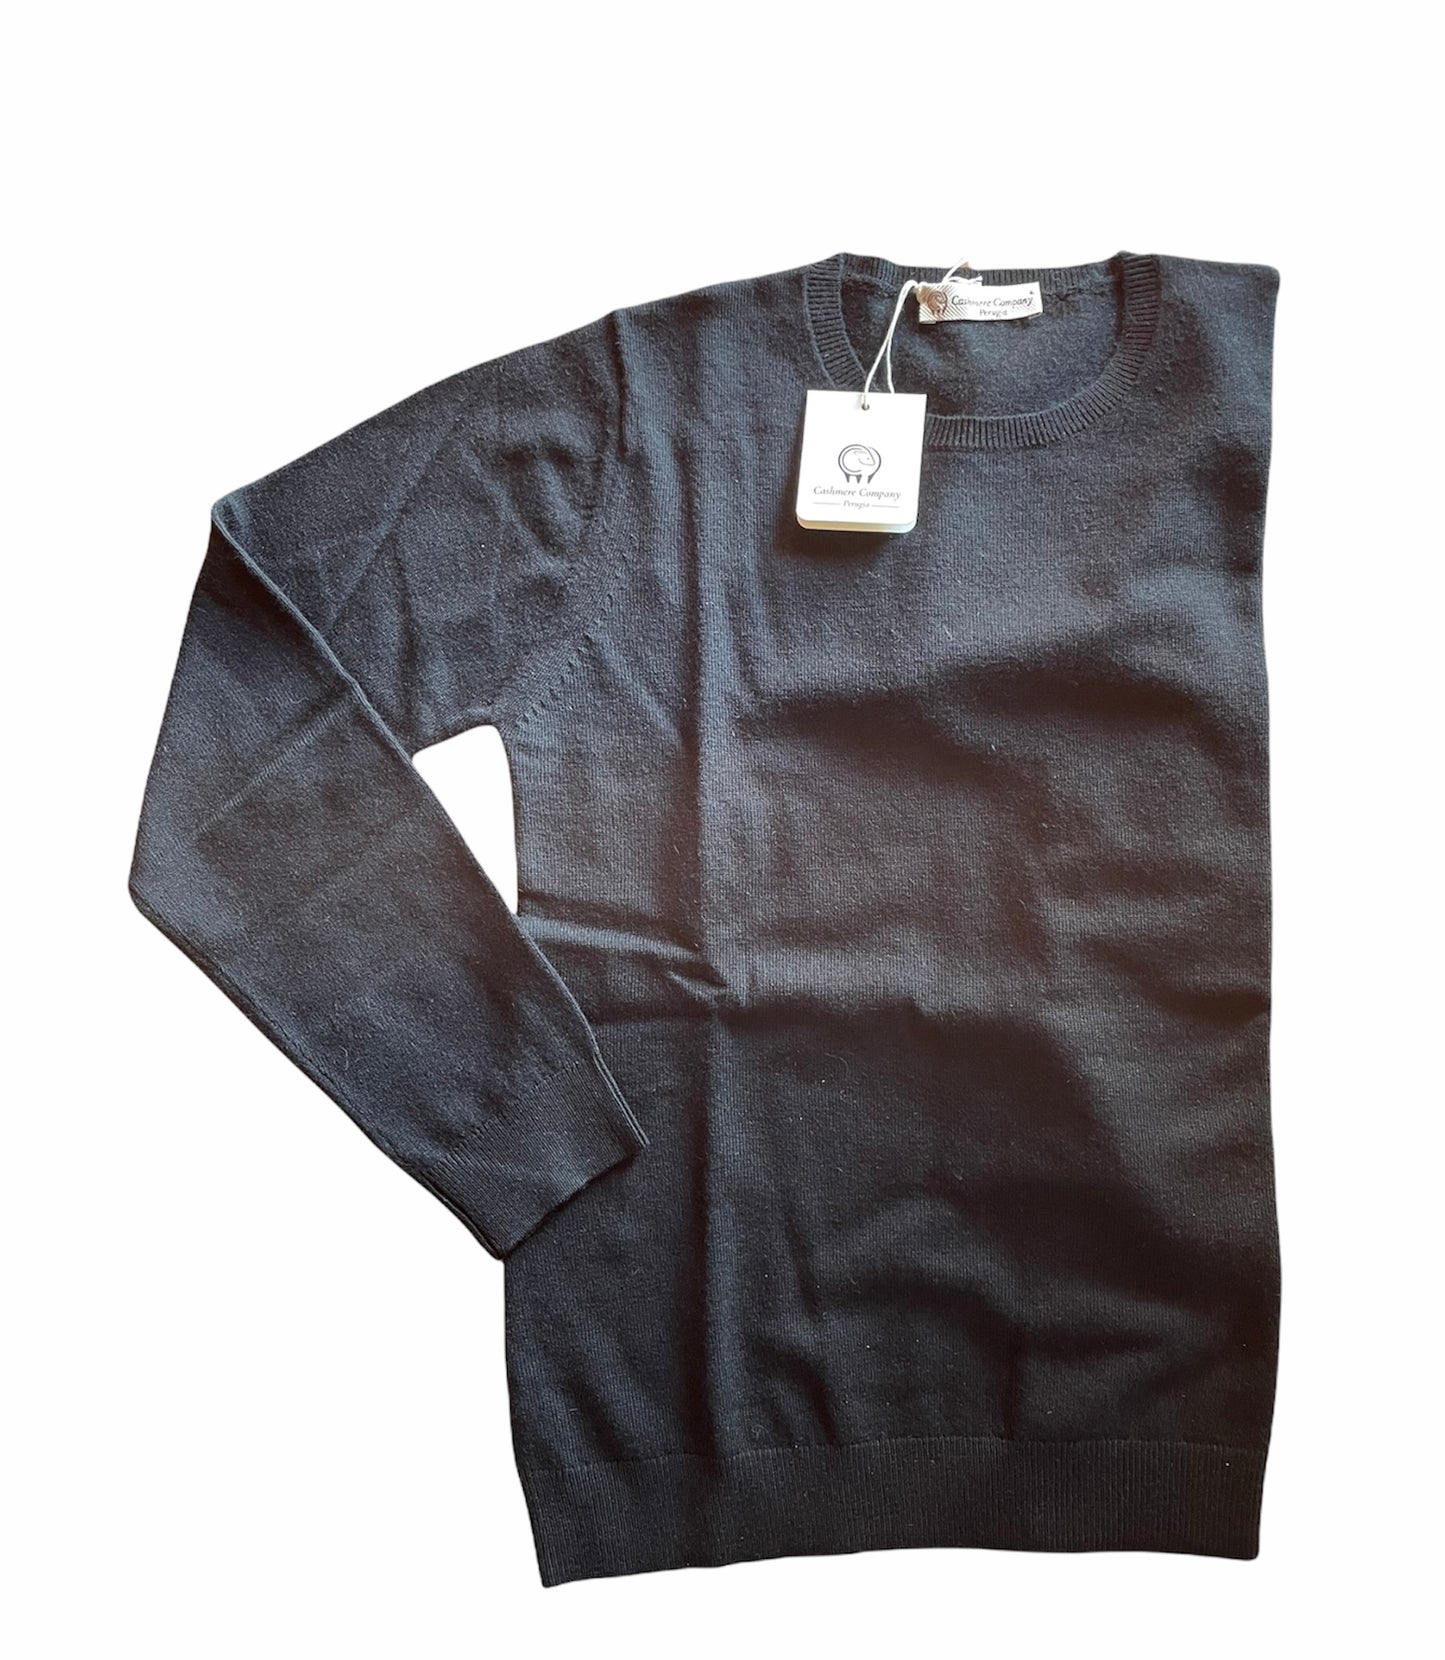 Cashmere Company maglia donna nero SC-50% girocollo maglione pullover manica lunga Cashmere e Lana Made in Italy